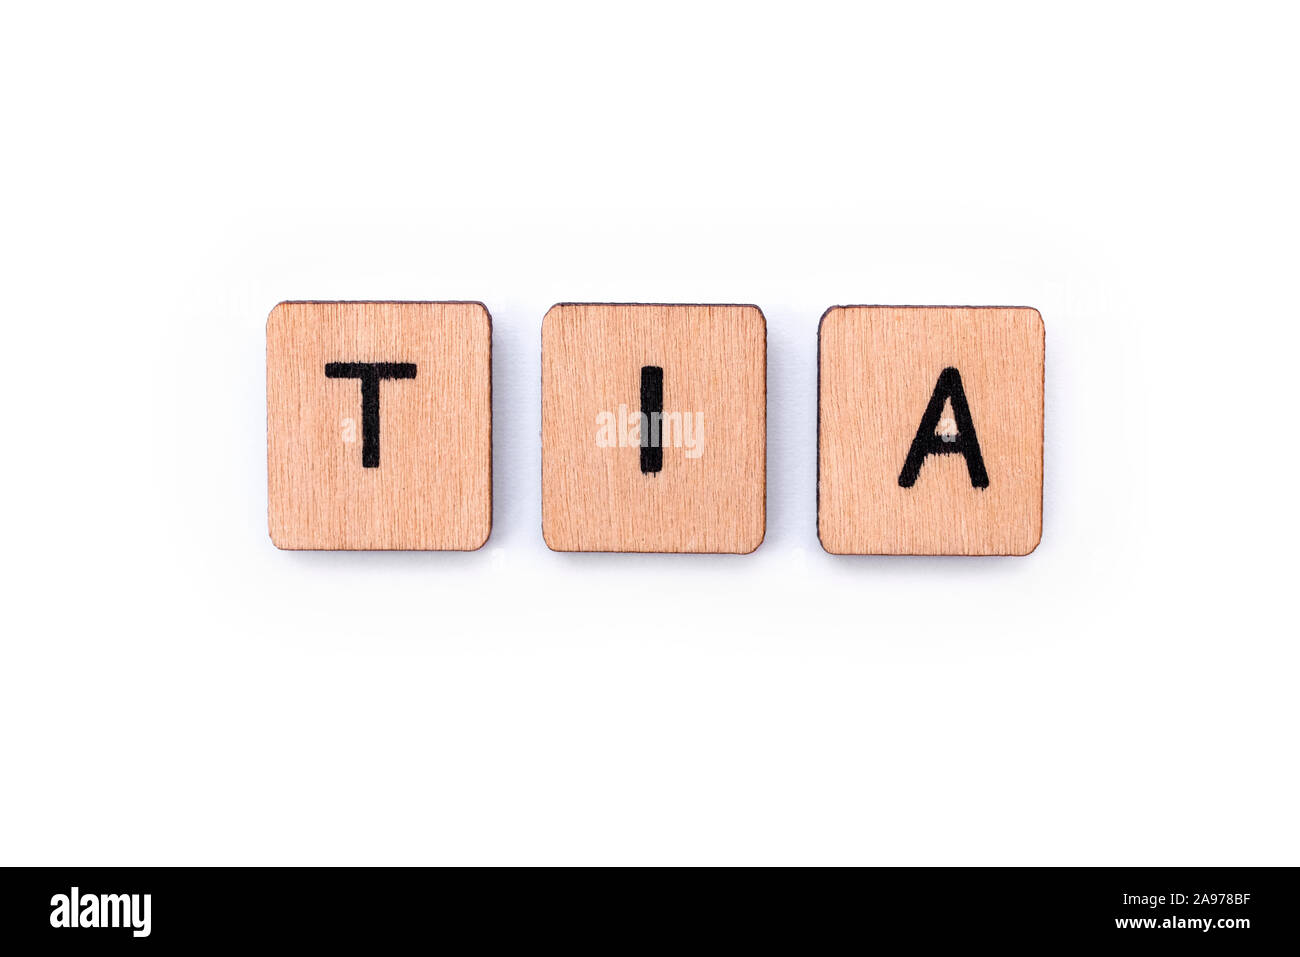 La sigla TIA - significato attacco ischemico transitorio - il termine medico per una mini-corsa, farro con lettera in legno piastrelle su uno sfondo bianco. Foto Stock